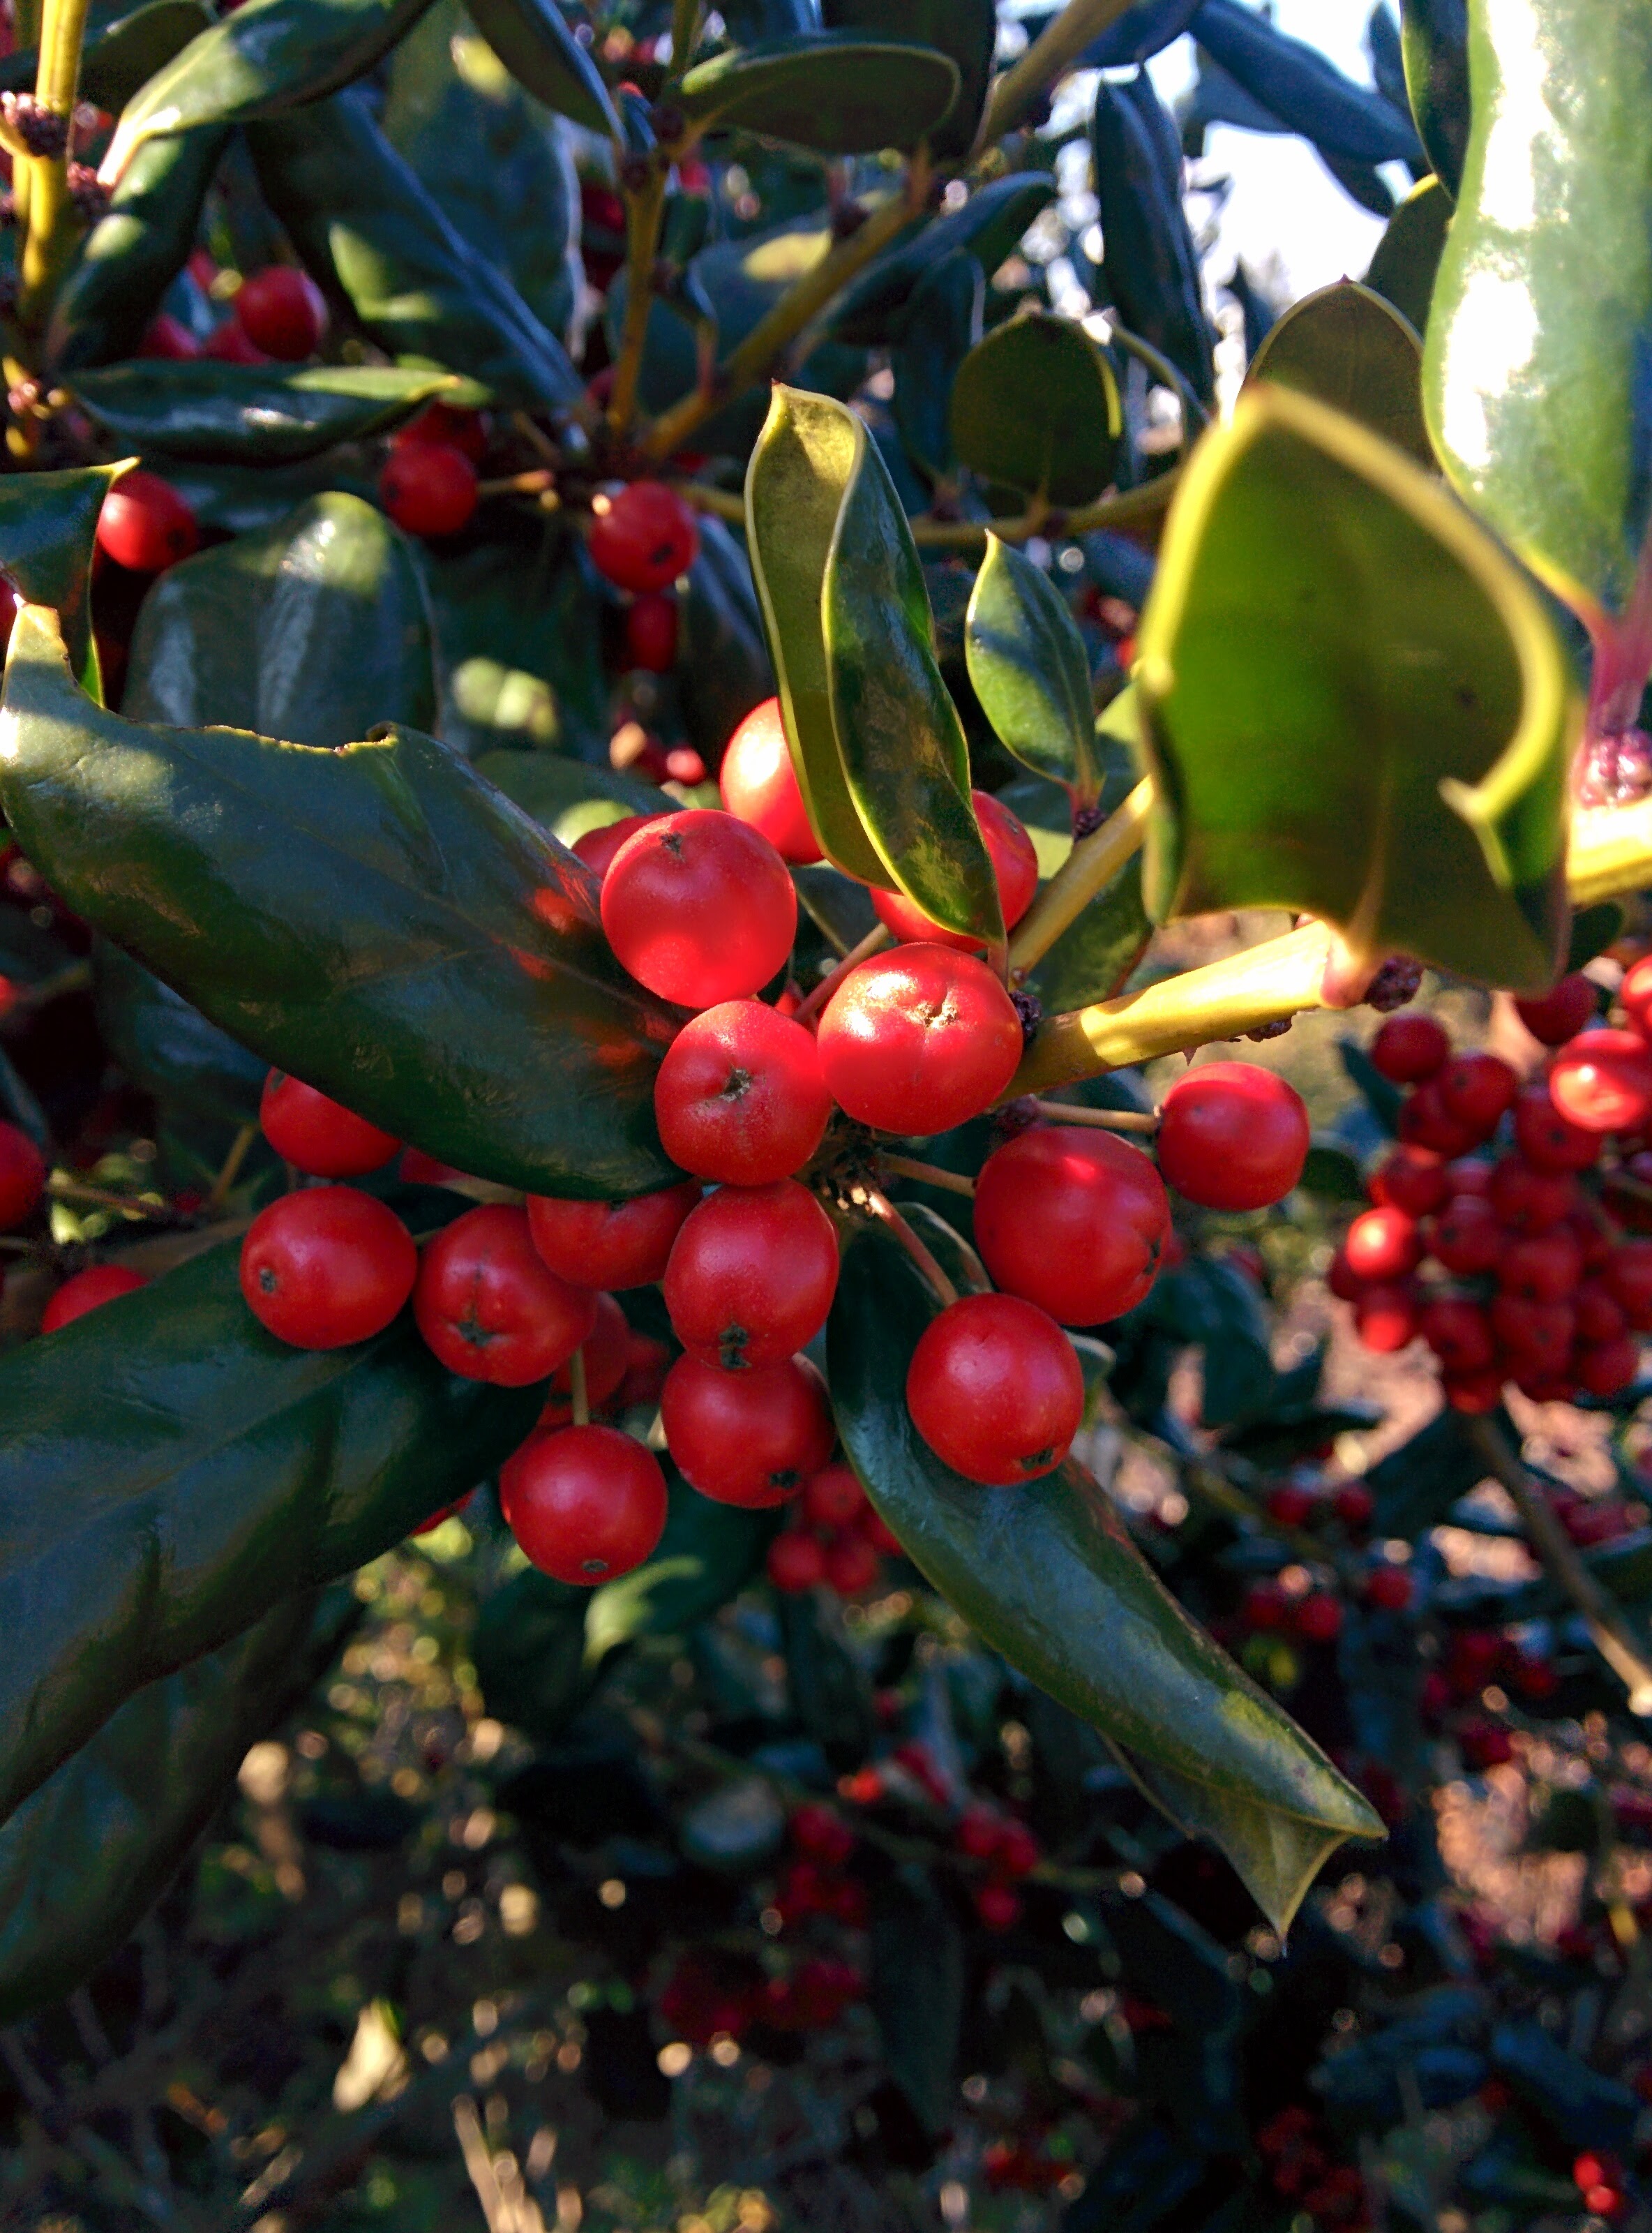 IMG_20151228_143337.jpg 붉은색 열매를 잔뜩 매단 호랑가시나무